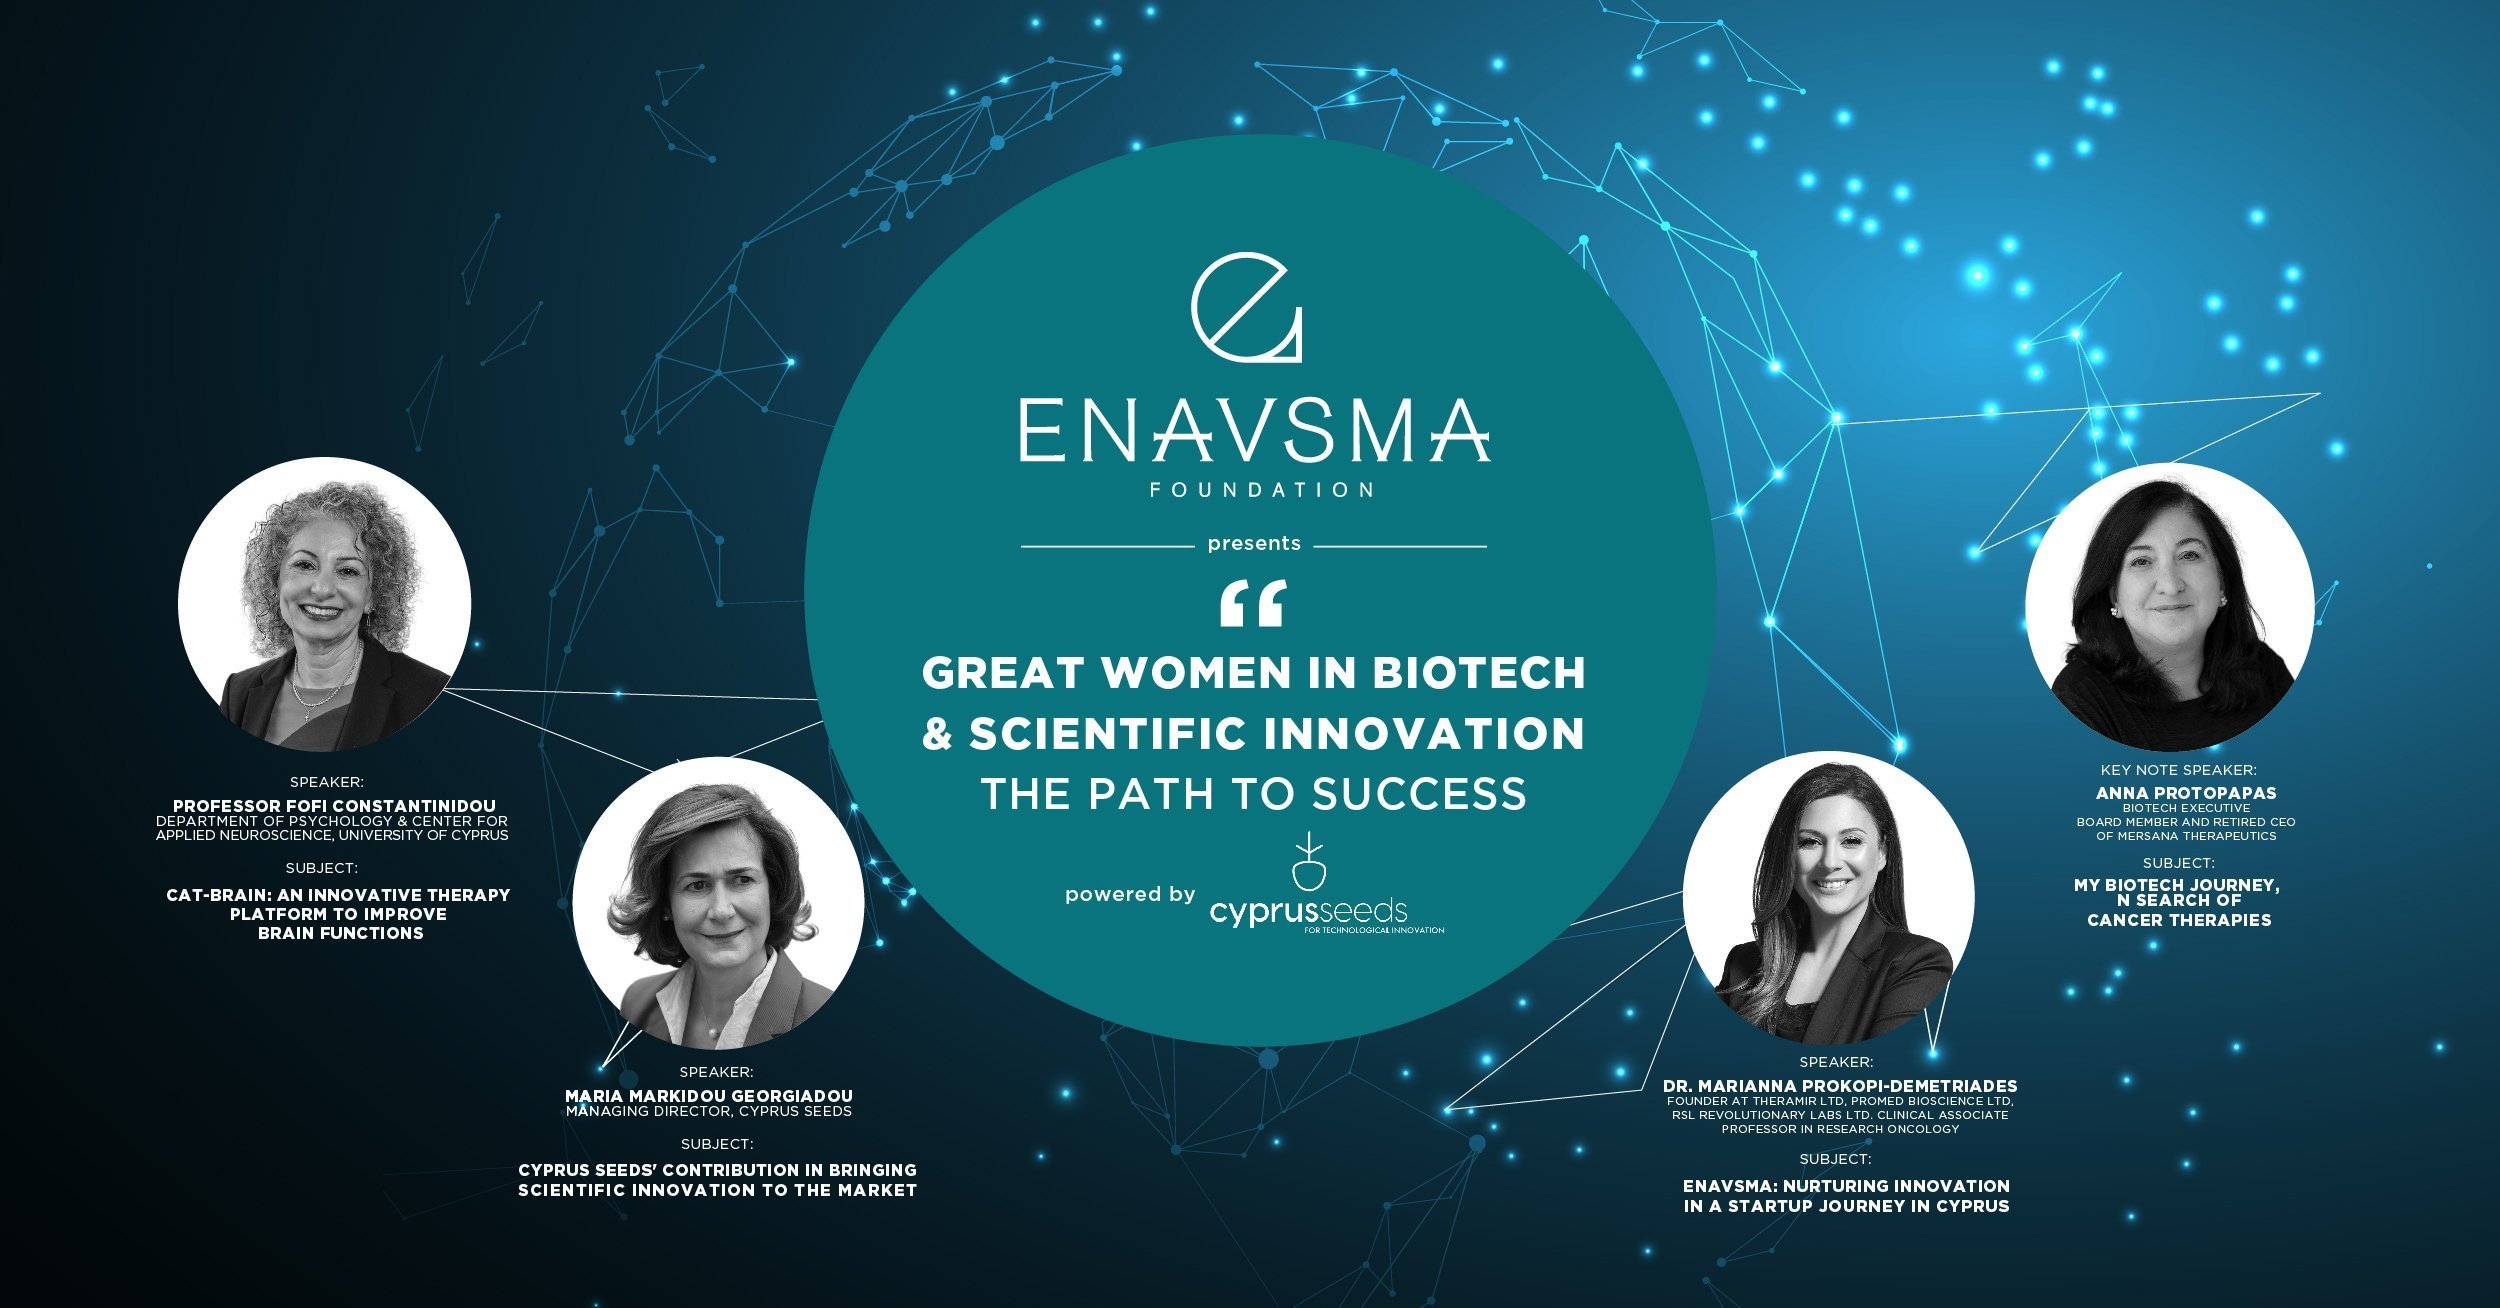 Το Enavsma Foundation παρουσιάζει τέσσερις σπουδαίες γυναίκες στον τομέα της βιοτεχνολογίας και της επιστημονικής καινοτομίας